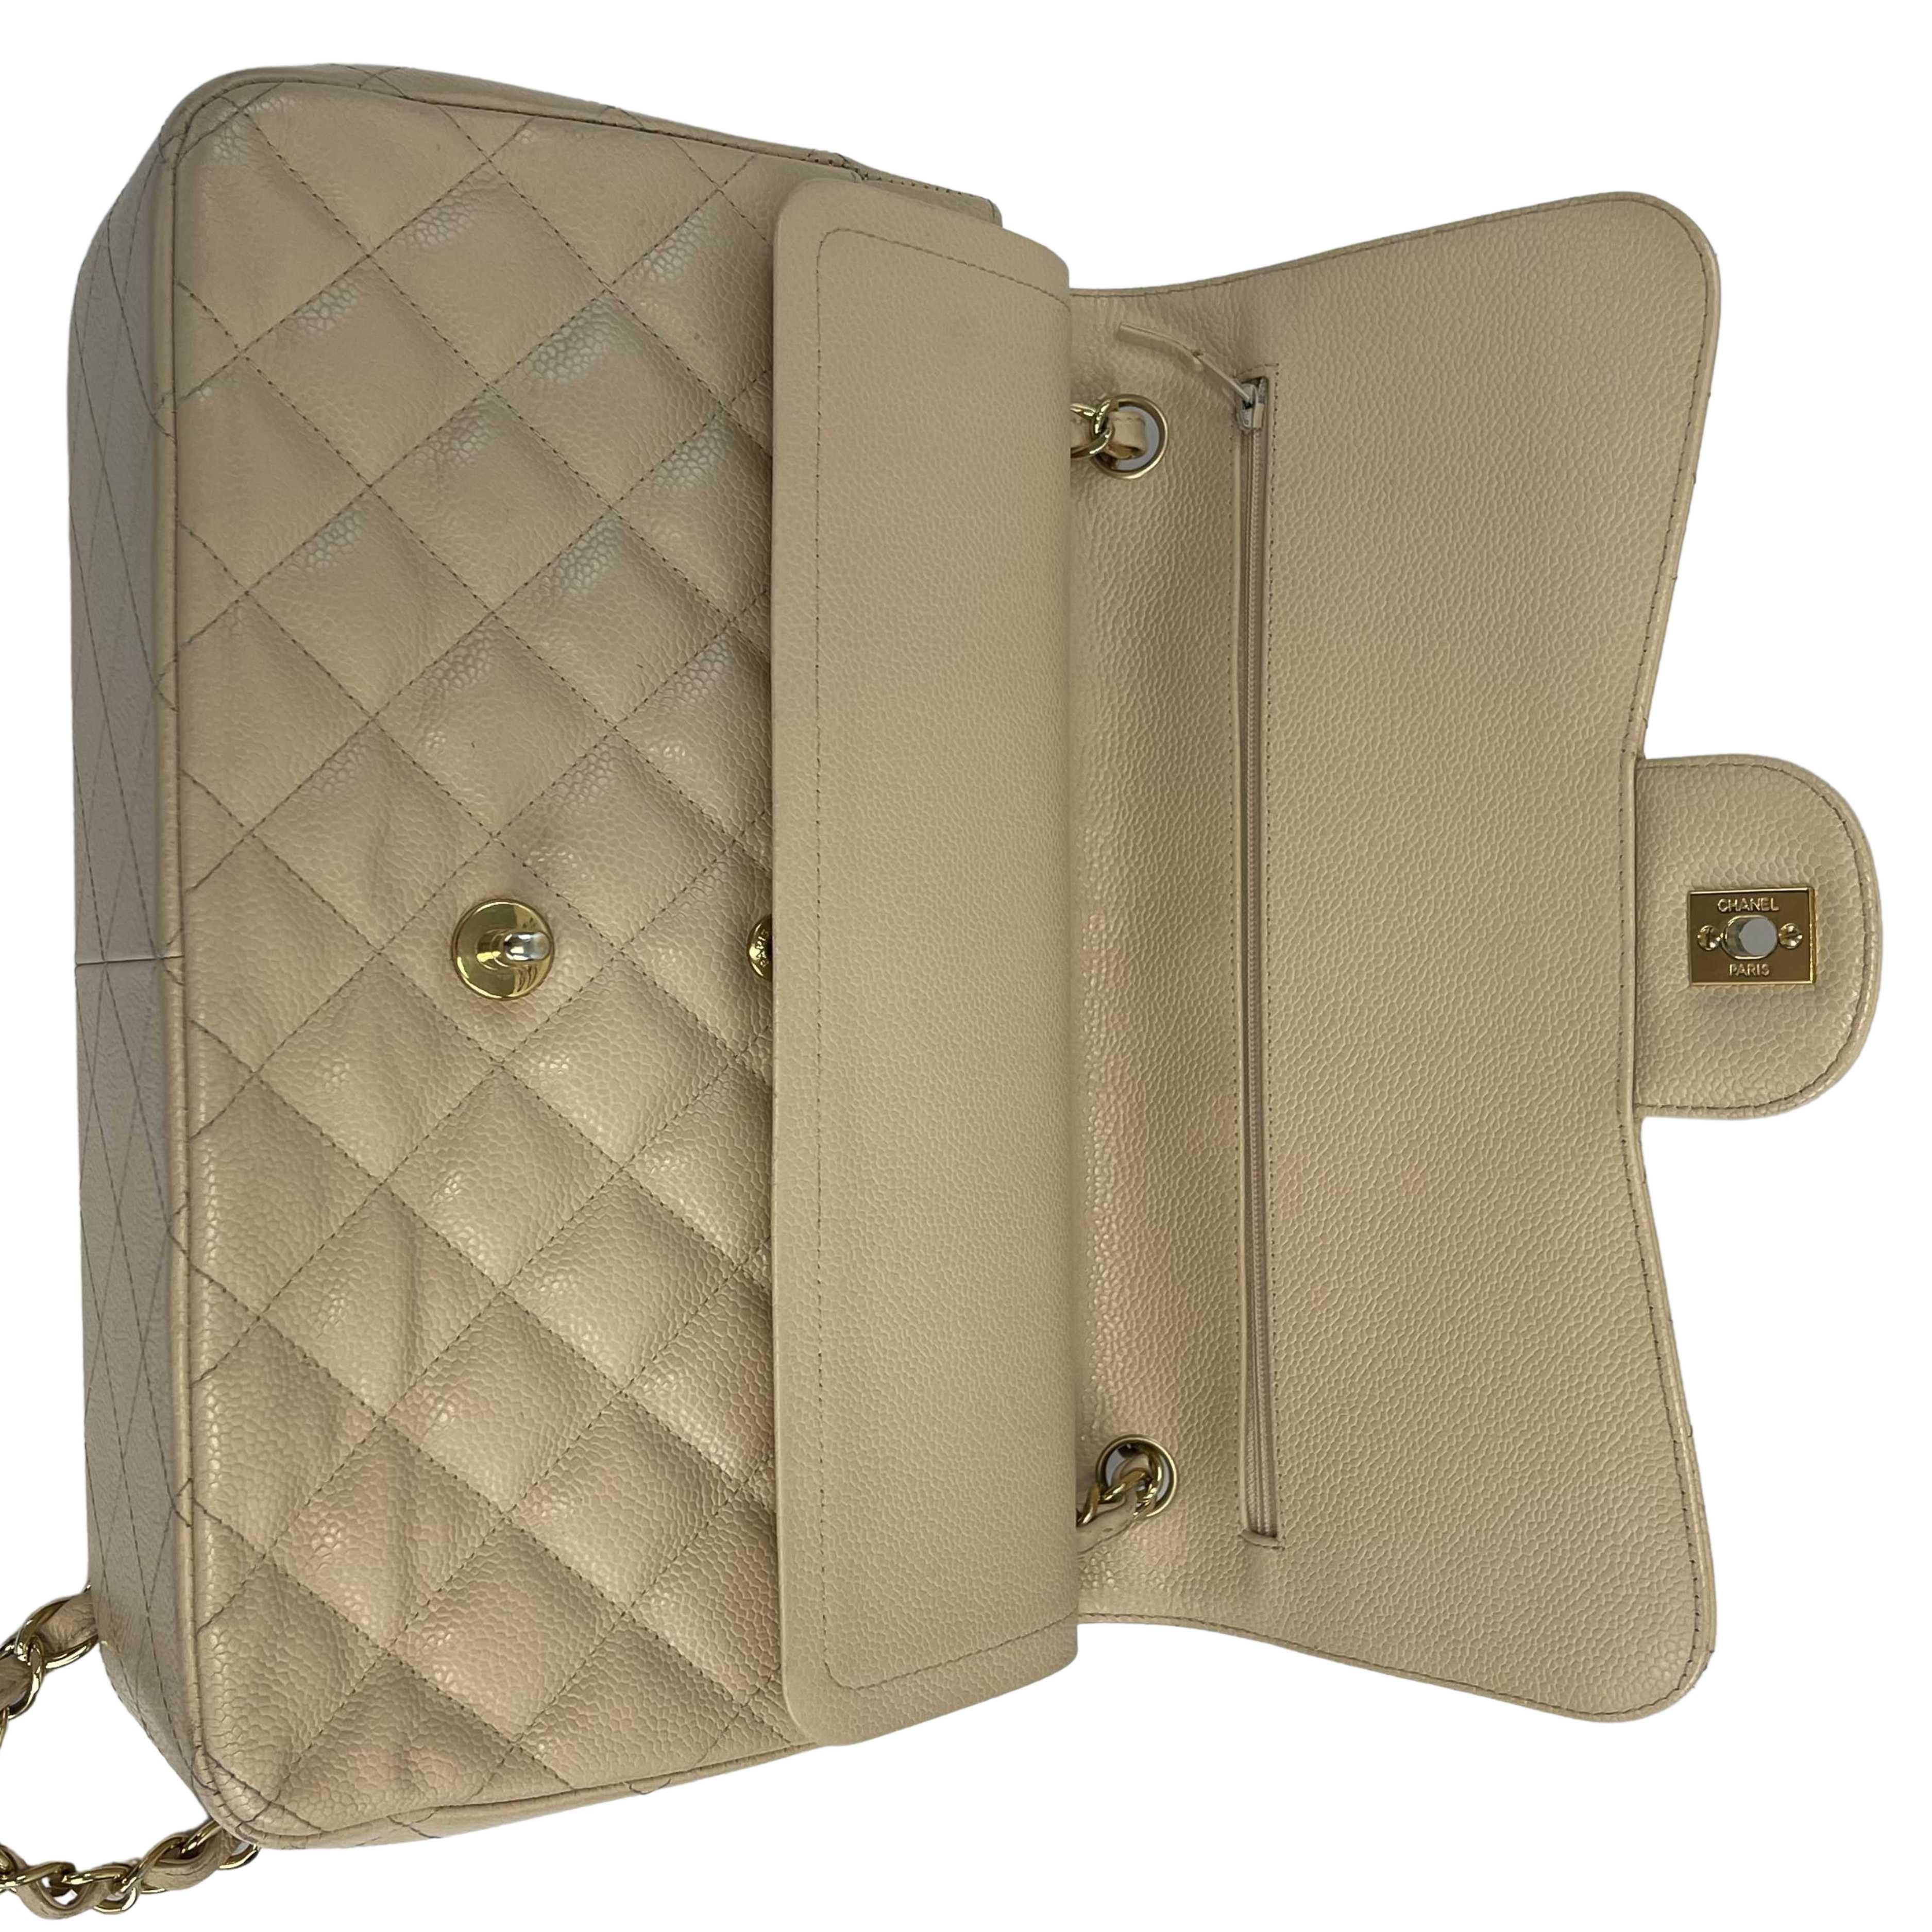 CHANEL - Large CC Caviar Leather Double Flap Tan Shoulder Bag For Sale 4